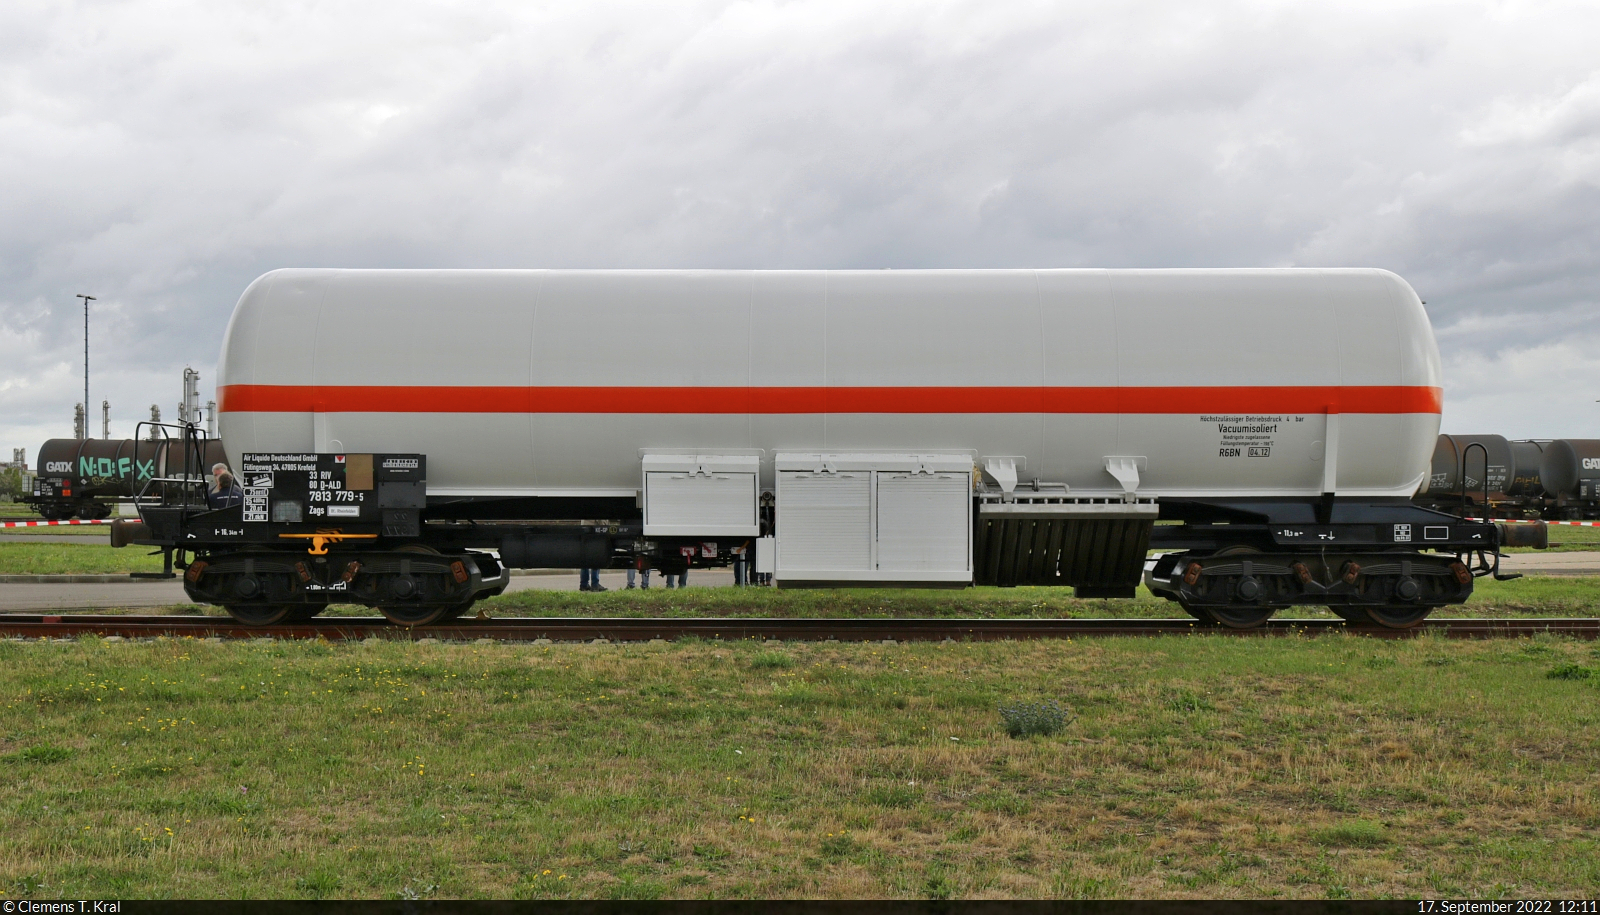 Gaskesselwagen mit der Bezeichnung  Zags  (33 80 7813 779-5 D-ALD) ist bei der InfraLeuna zum Tag der Schiene ausgestellt.

🧰 Air Liquide Deutschland GmbH (Air Liquide S.A.)
🕓 17.9.2022 | 12:11 Uhr